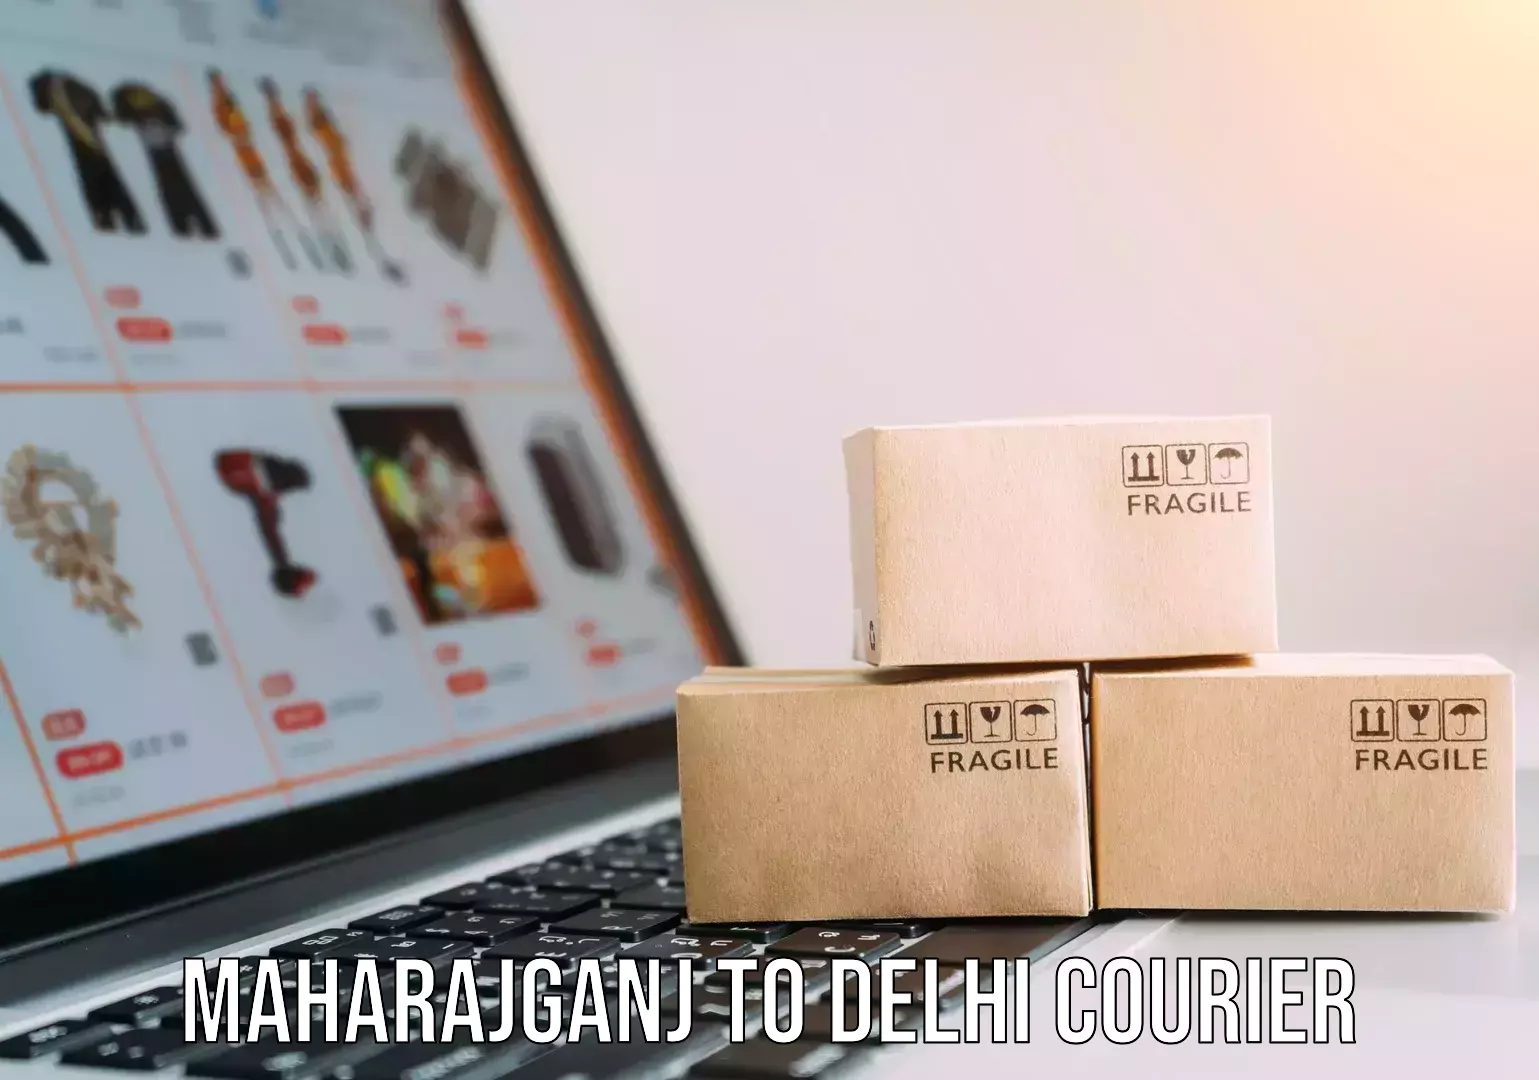 Furniture moving experts Maharajganj to Delhi